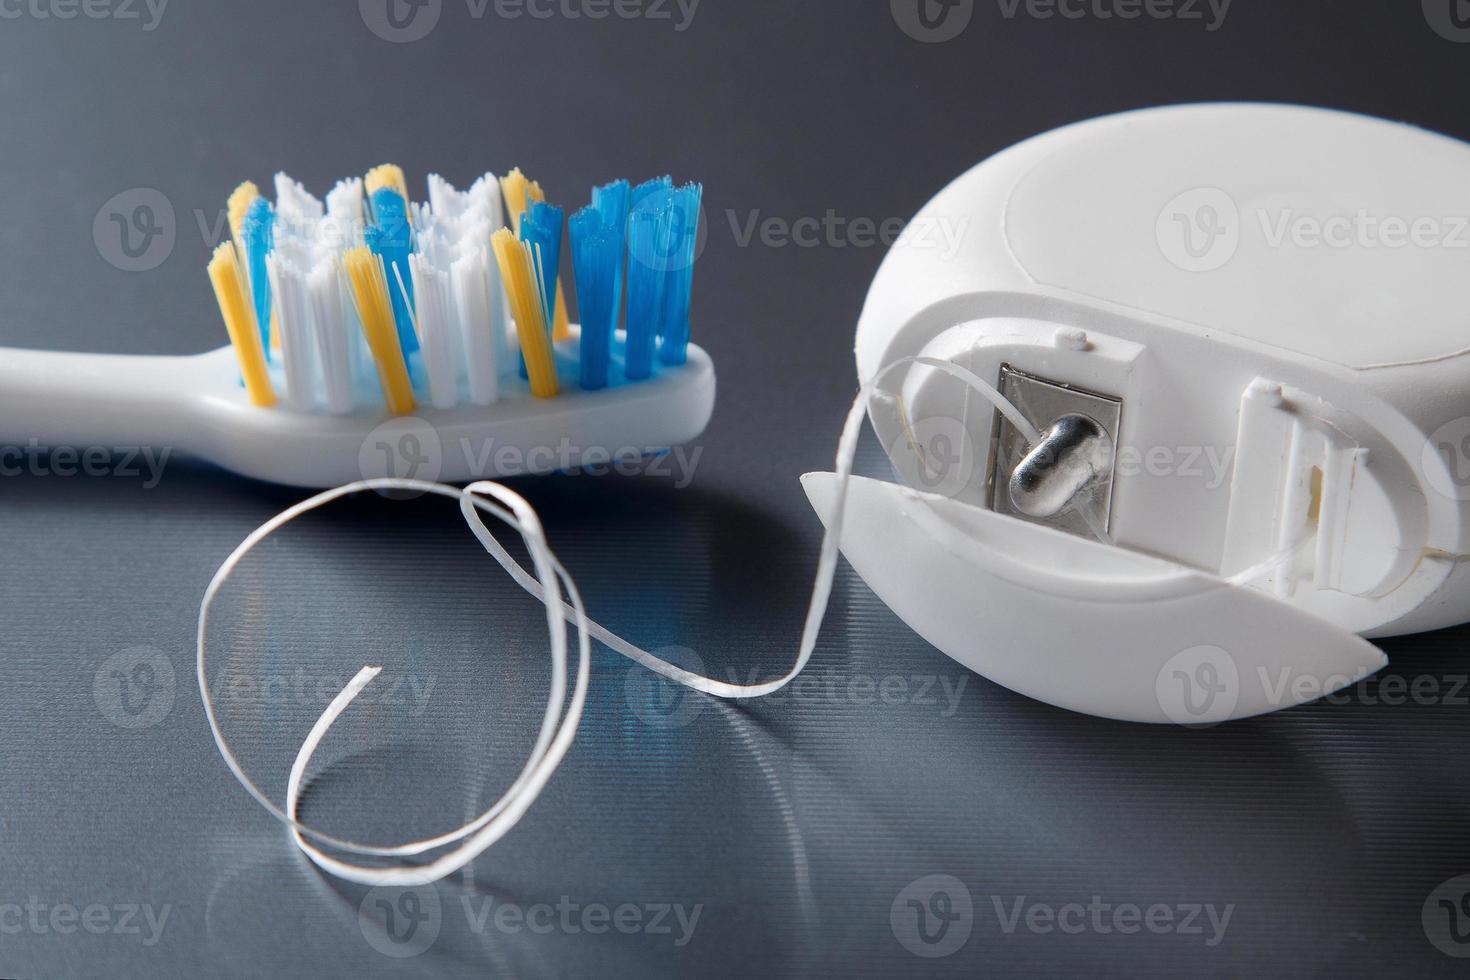 escova de dente e fio dental foto